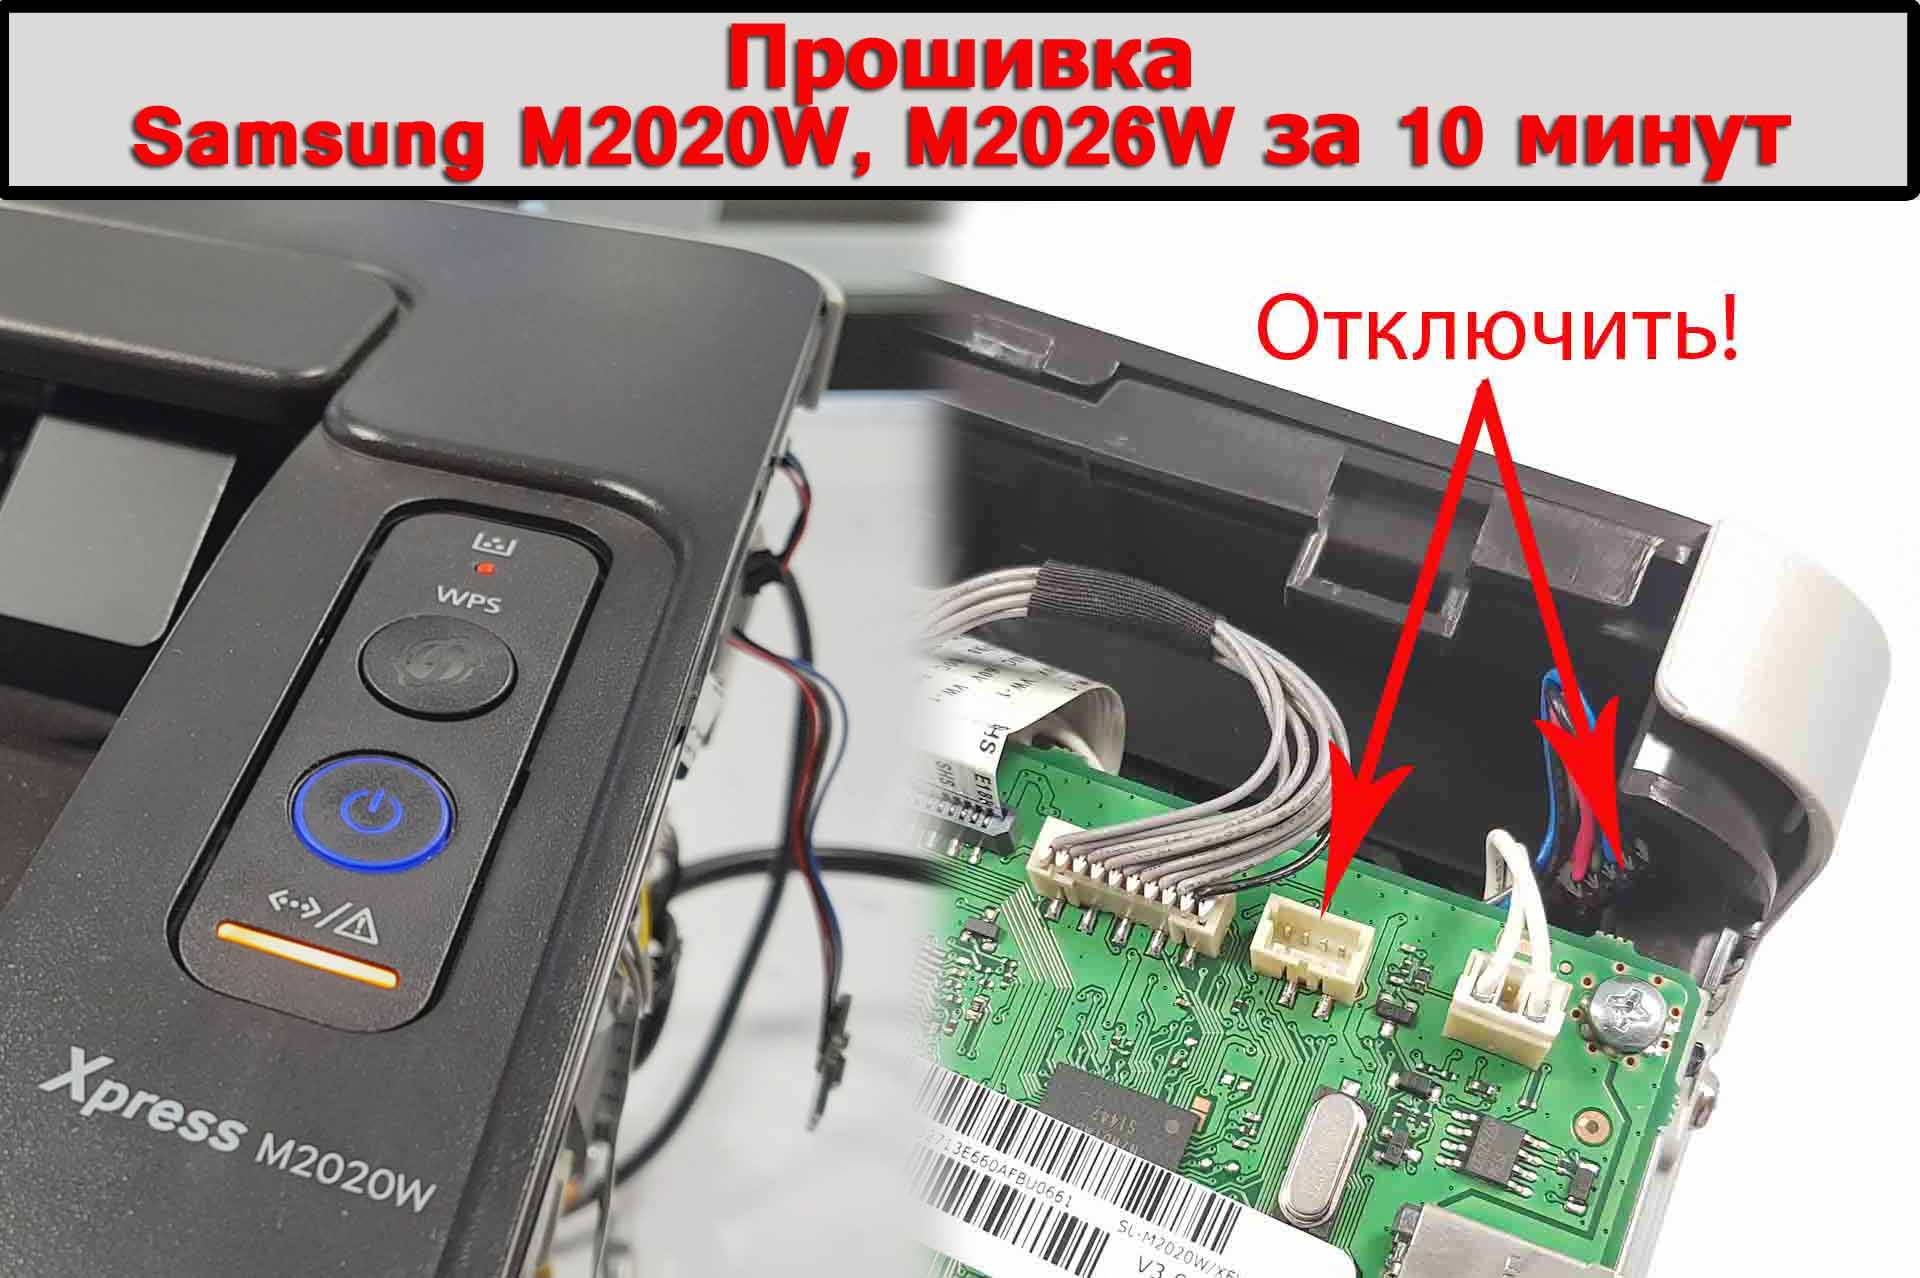 Прошивка Samsung M2020W M2026W за 10 минут